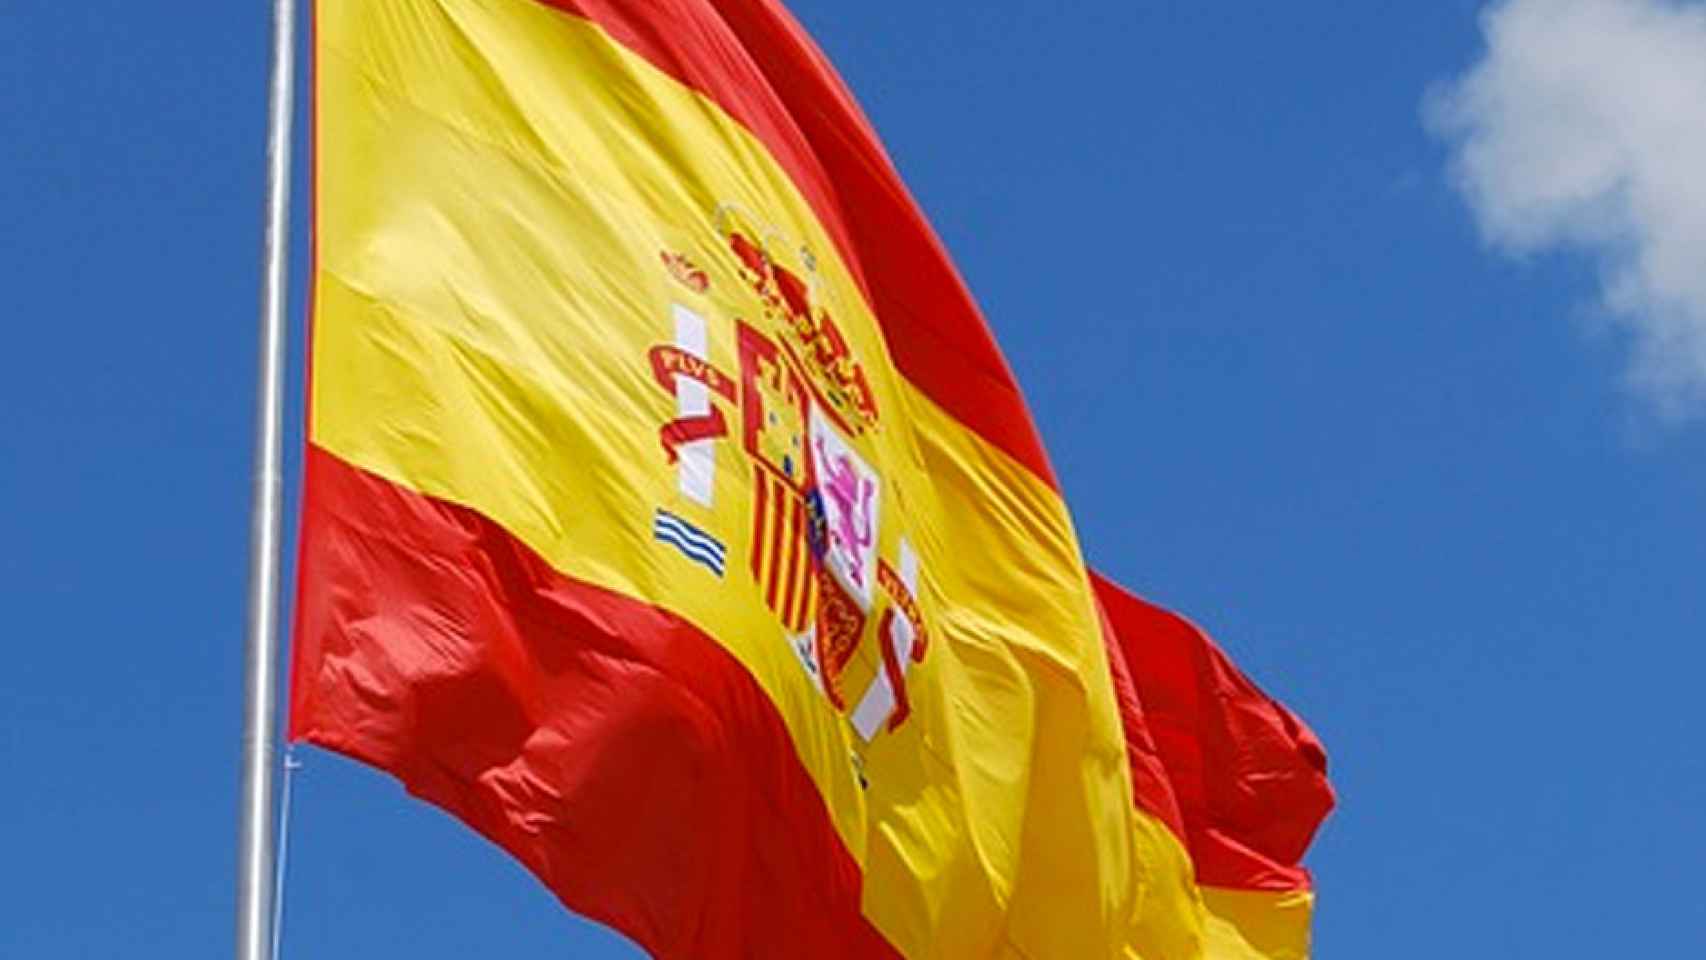 La bandera española constitucional ondea sobre un cielo azul intenso / CG